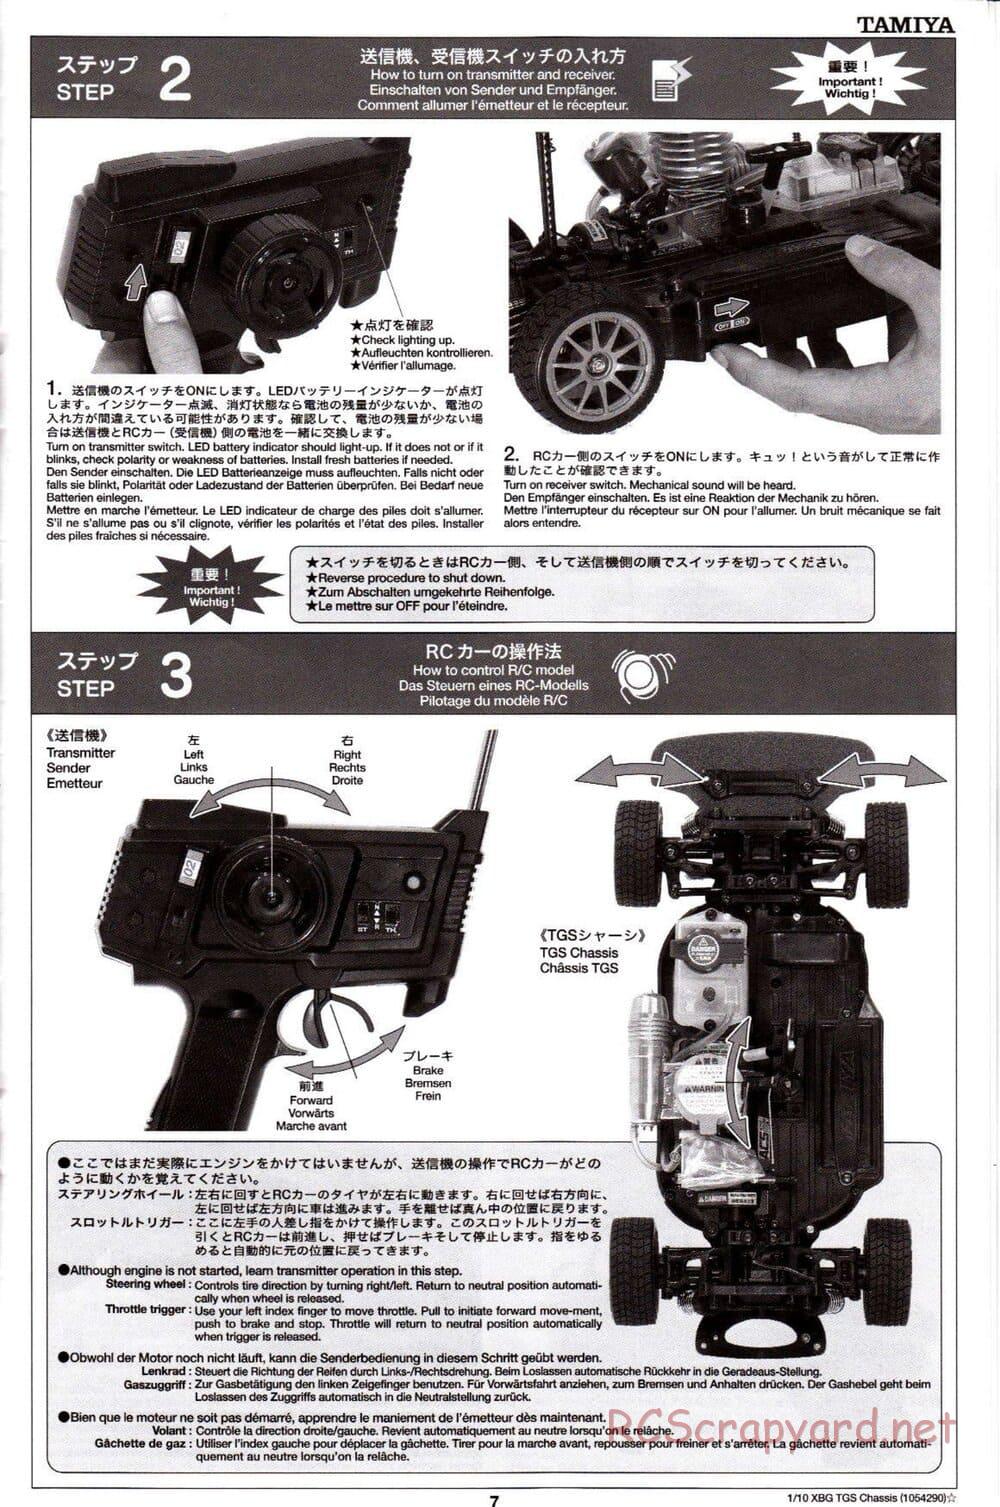 Tamiya - TGS Chassis - Manual - Page 7